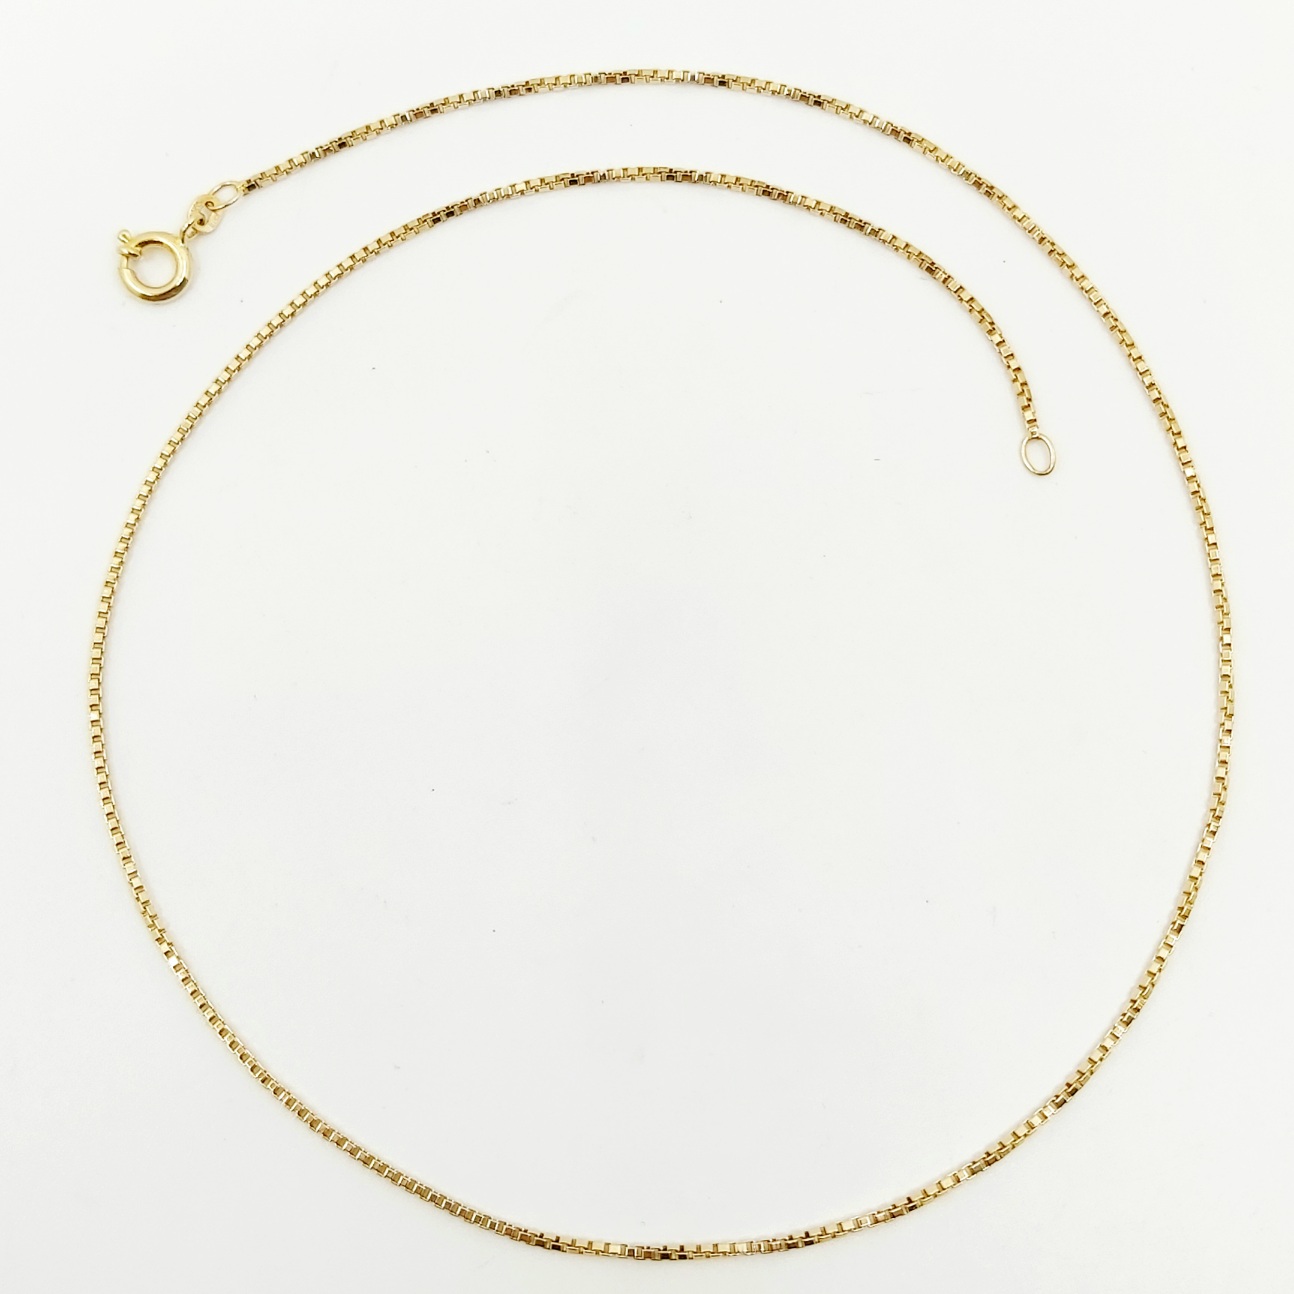 1 Halskette 585/- , 43 cm, 4,73 g